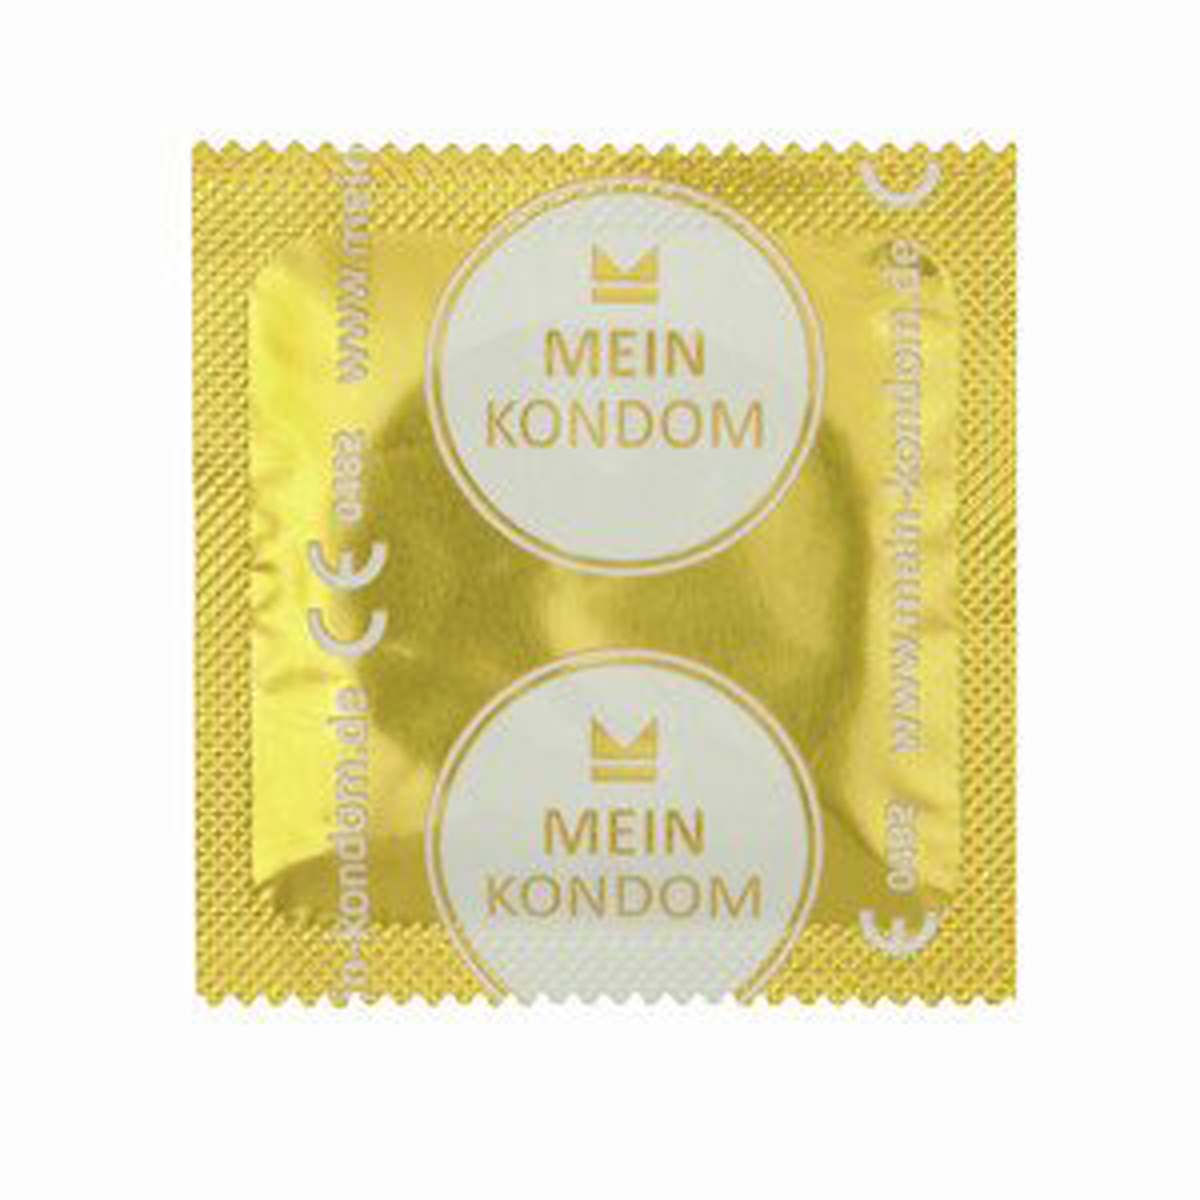 Mein Kondom Color 12 Stk., farbig und aromatisiert_1